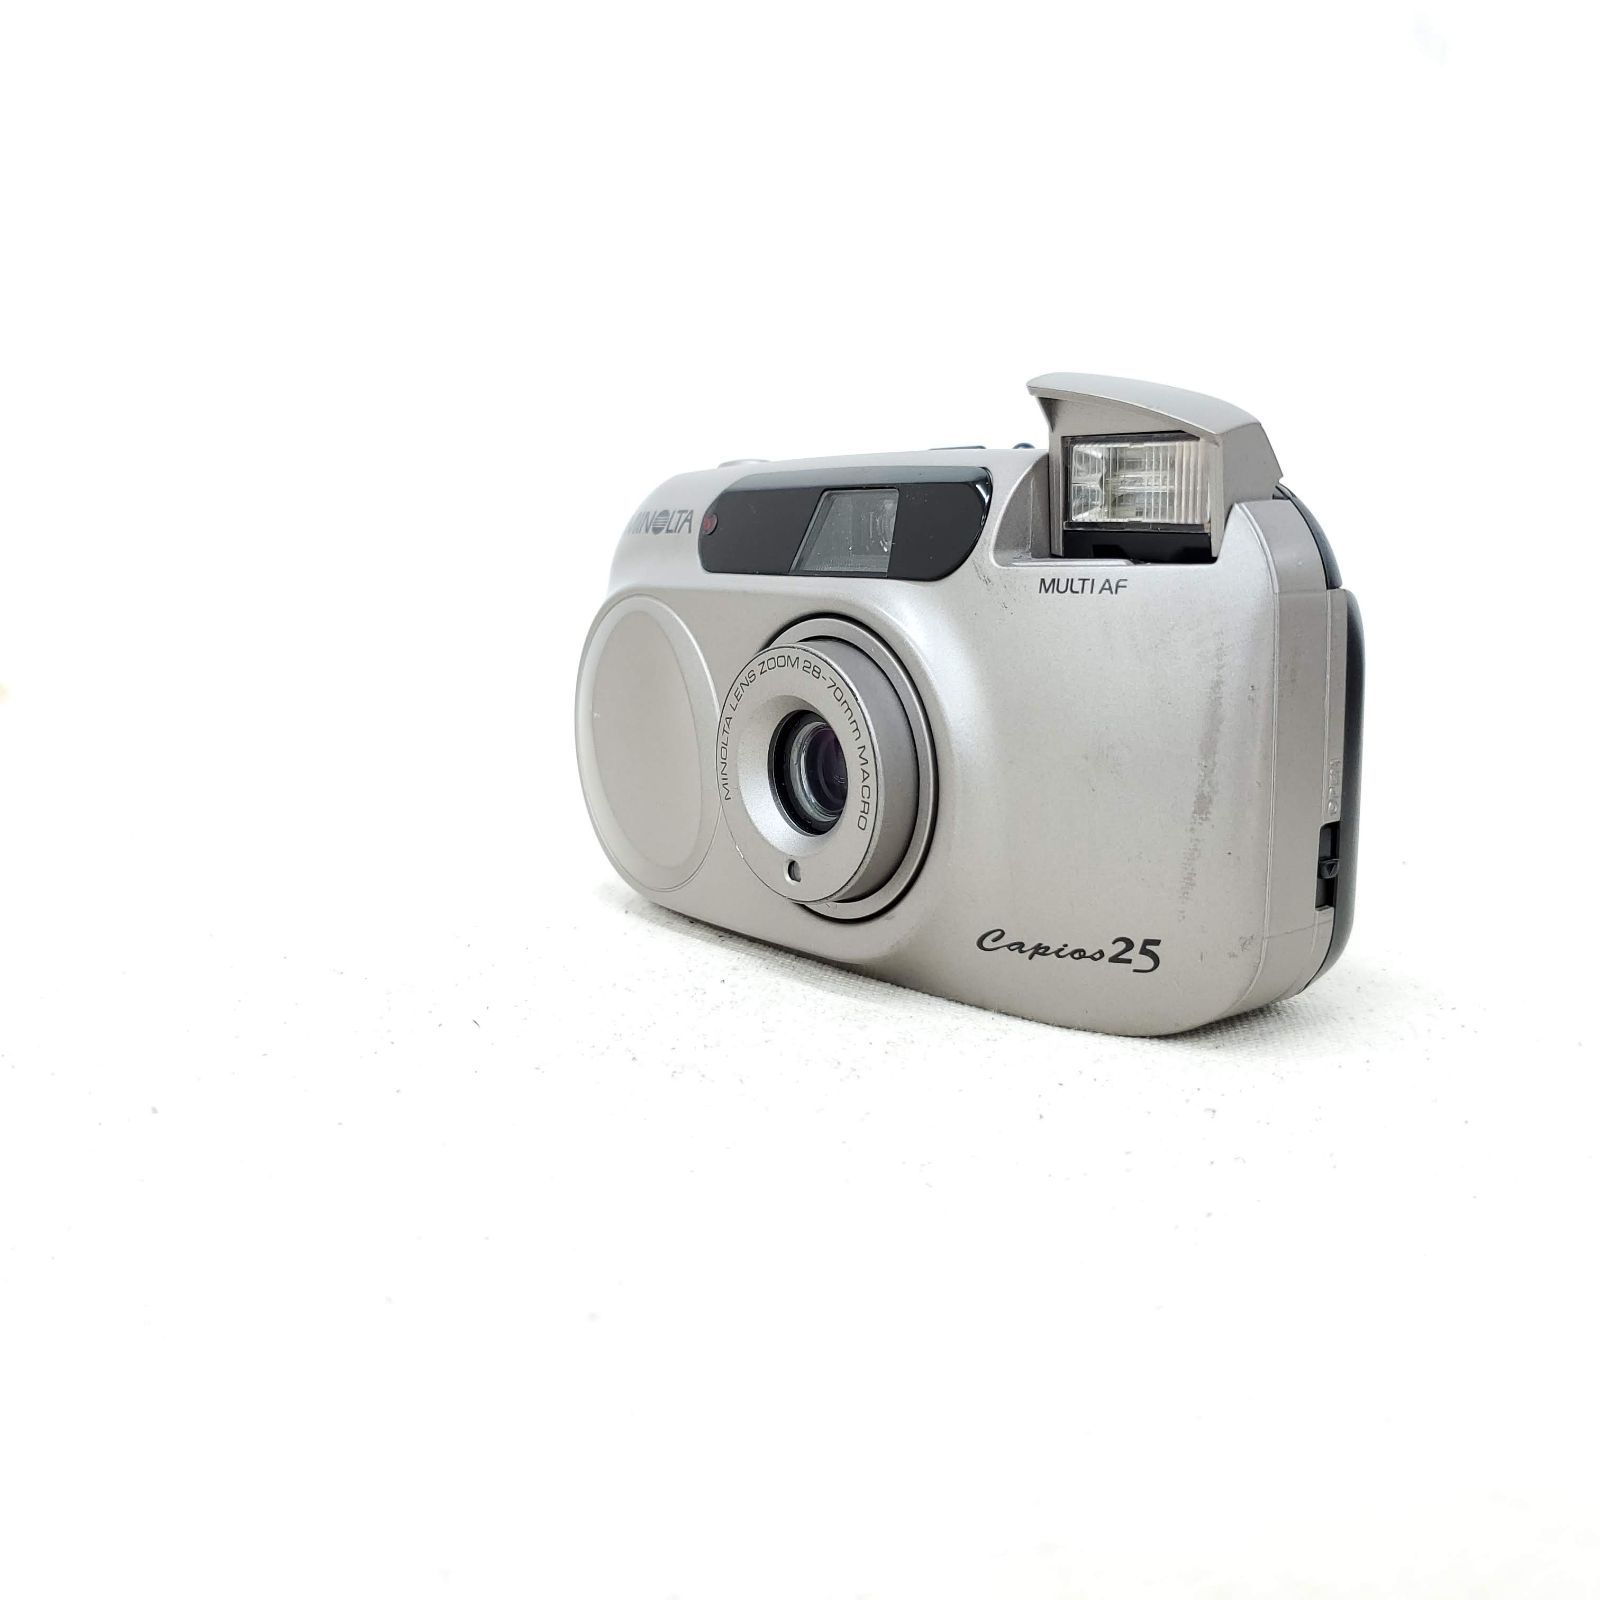 MINOLTA コンパクトフィルムカメラ Capios 25 - フィルムカメラ